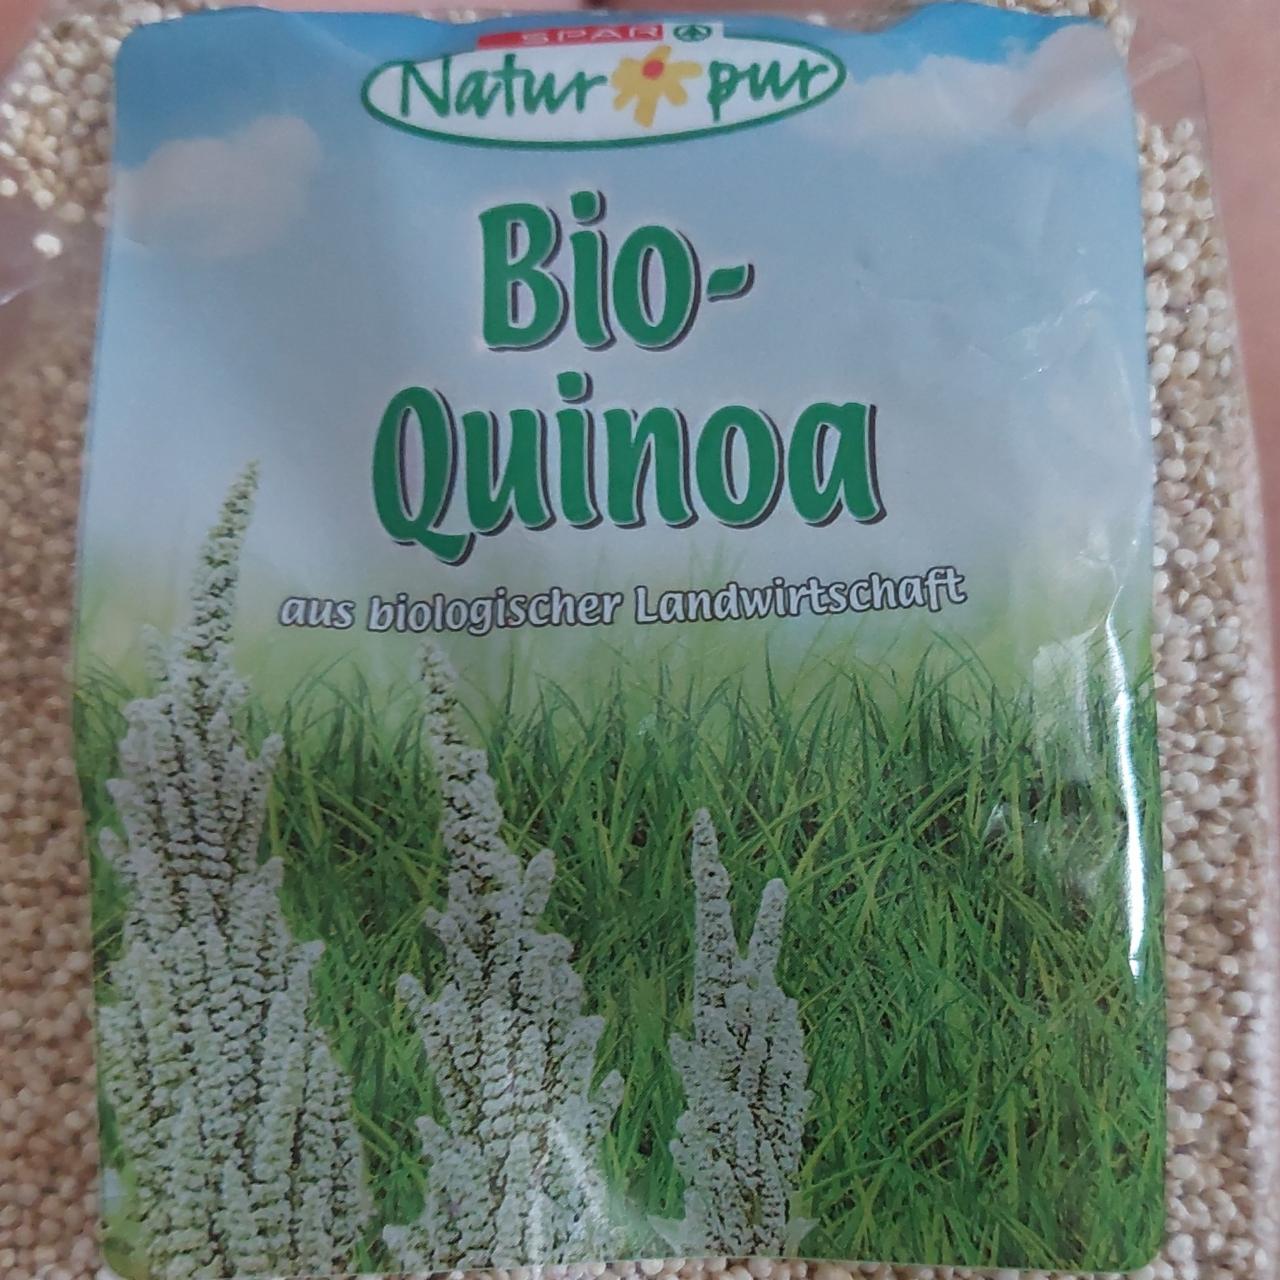 Fotografie - Bio-Quinoa Spar Natur pur